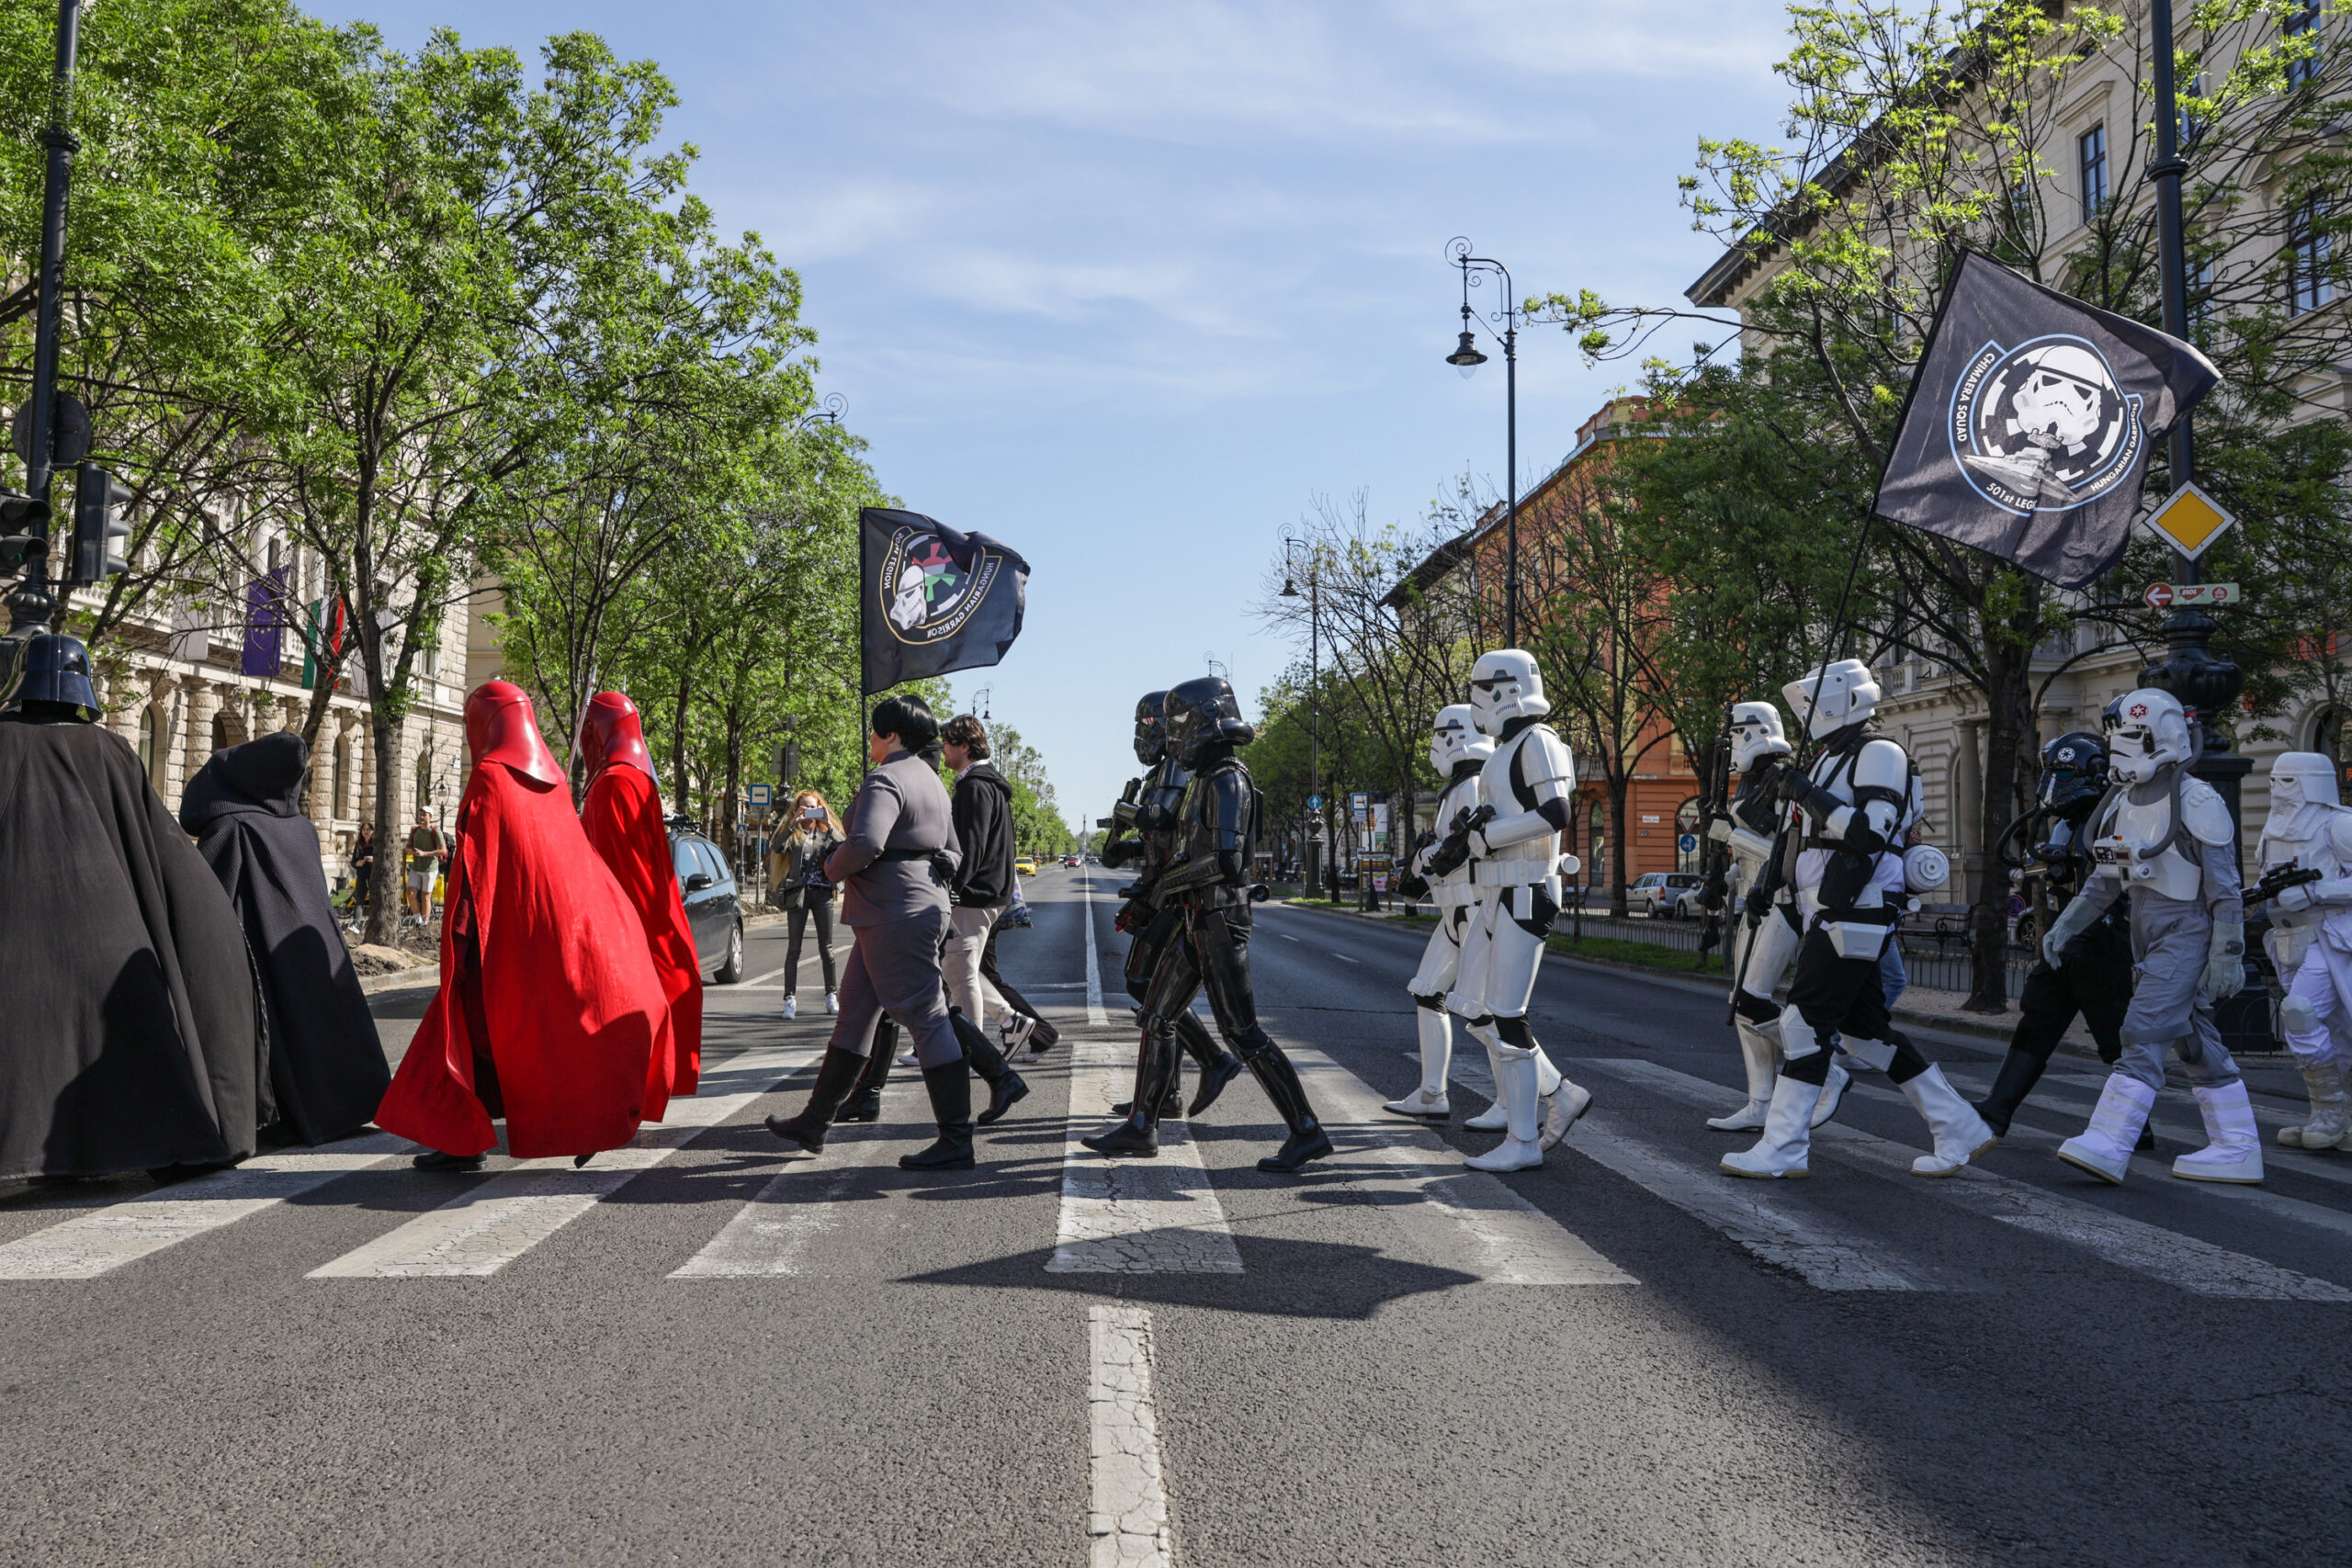 Az erő velük volt – Star Wars-jelmezekben masíroztak Budapest utcáin az 501-es légió rendezvényén